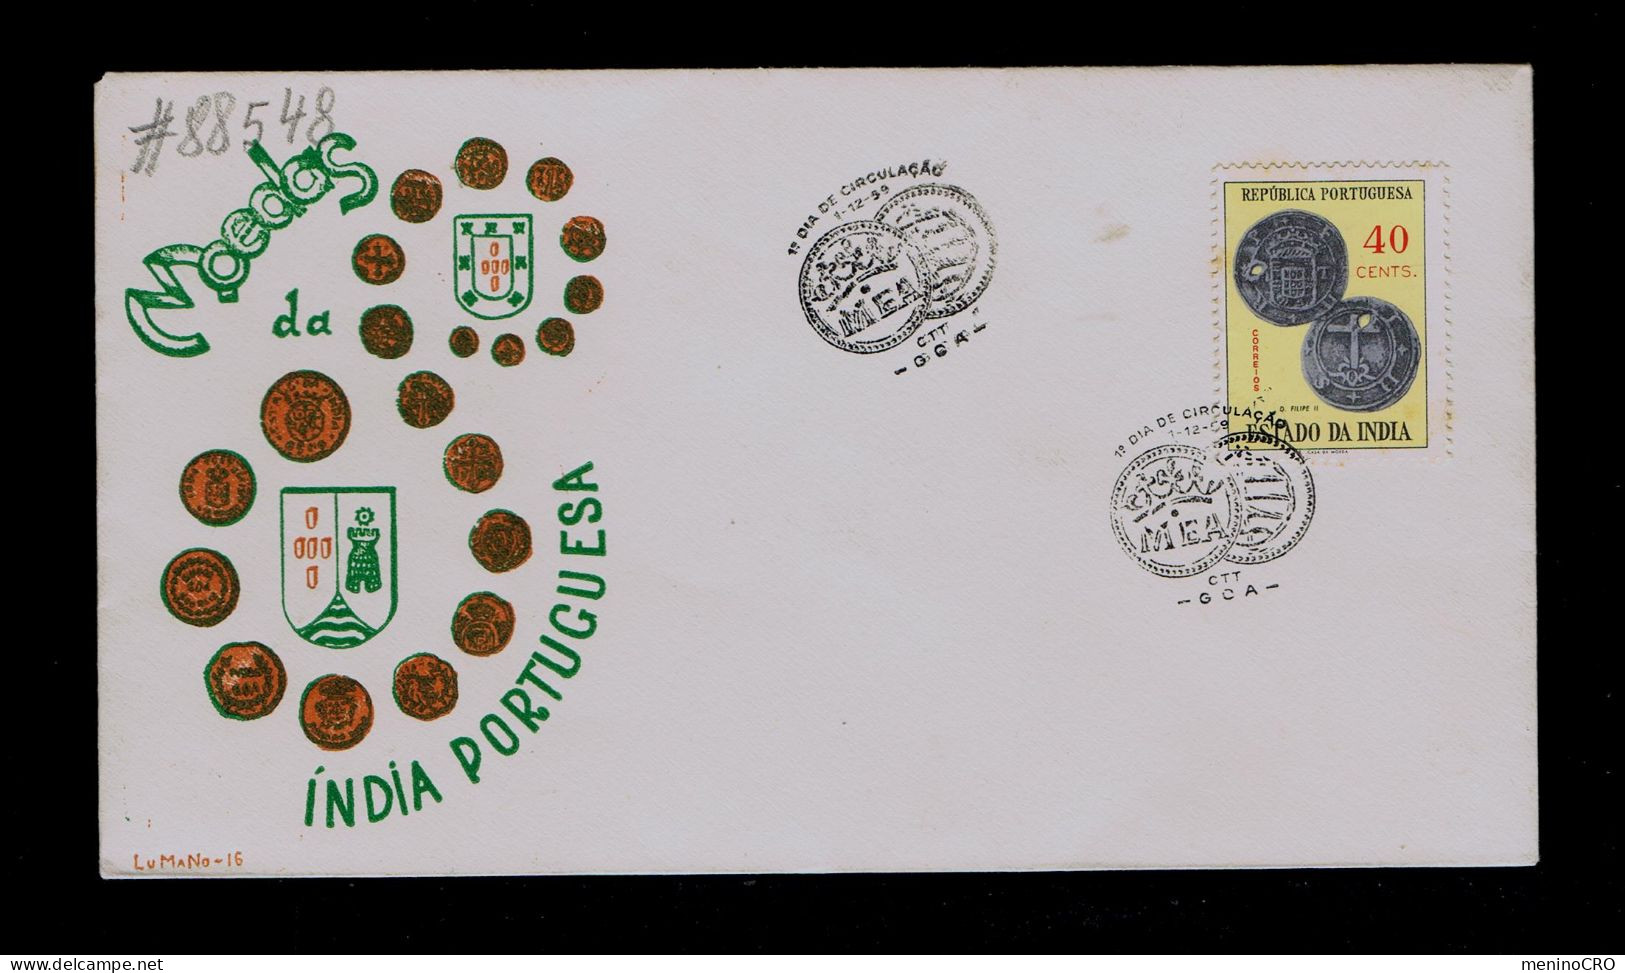 #88548 ESTADO DA INDIA GOA "coins" Monaies Issue MEA 1450-1959 Portugal - Monedas